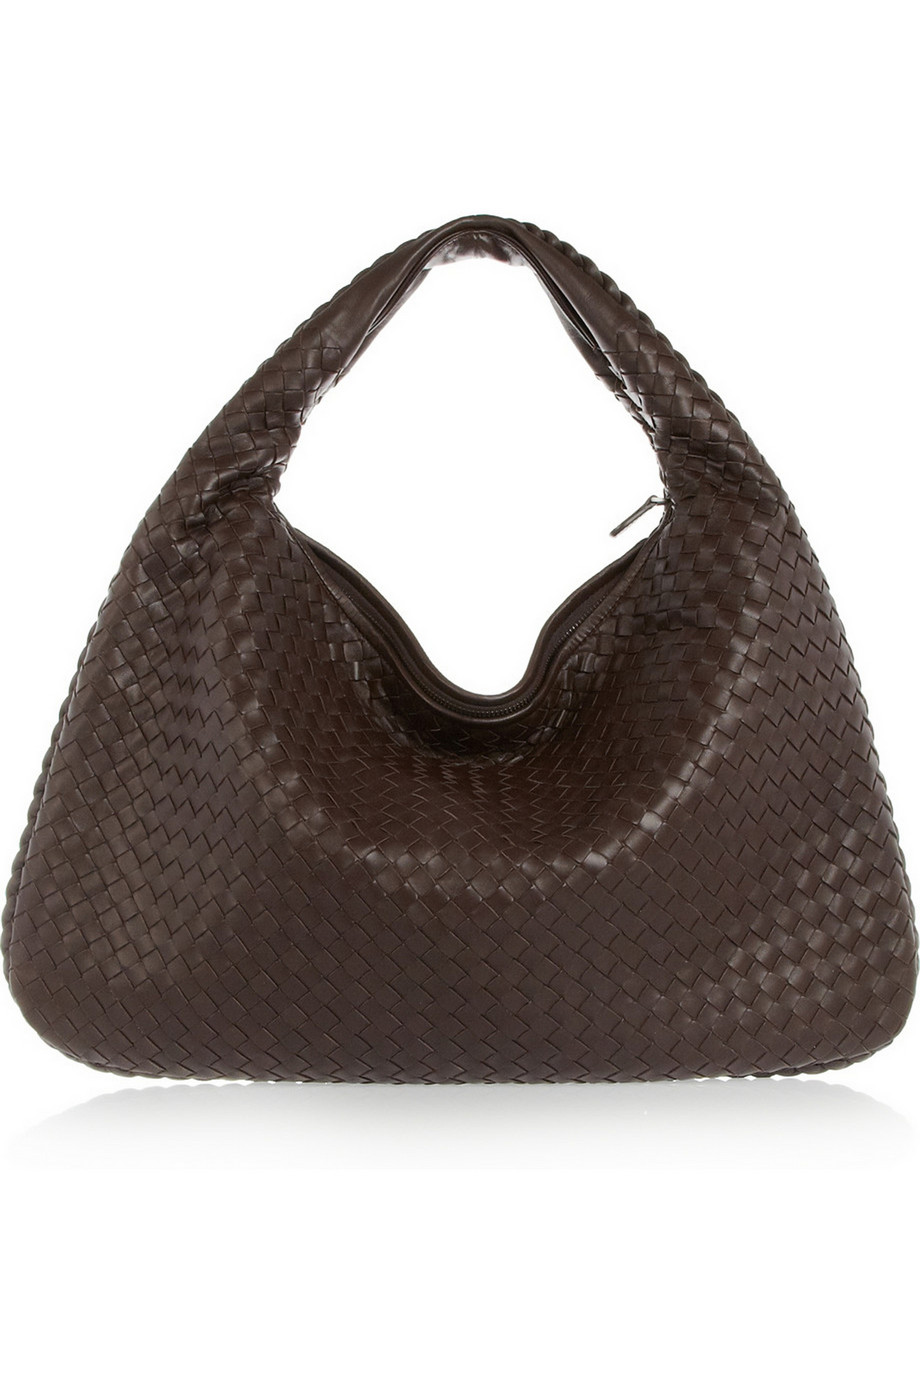 Bottega Veneta Large Veneta Intrecciato Leather Shoulder Bag in Brown ...